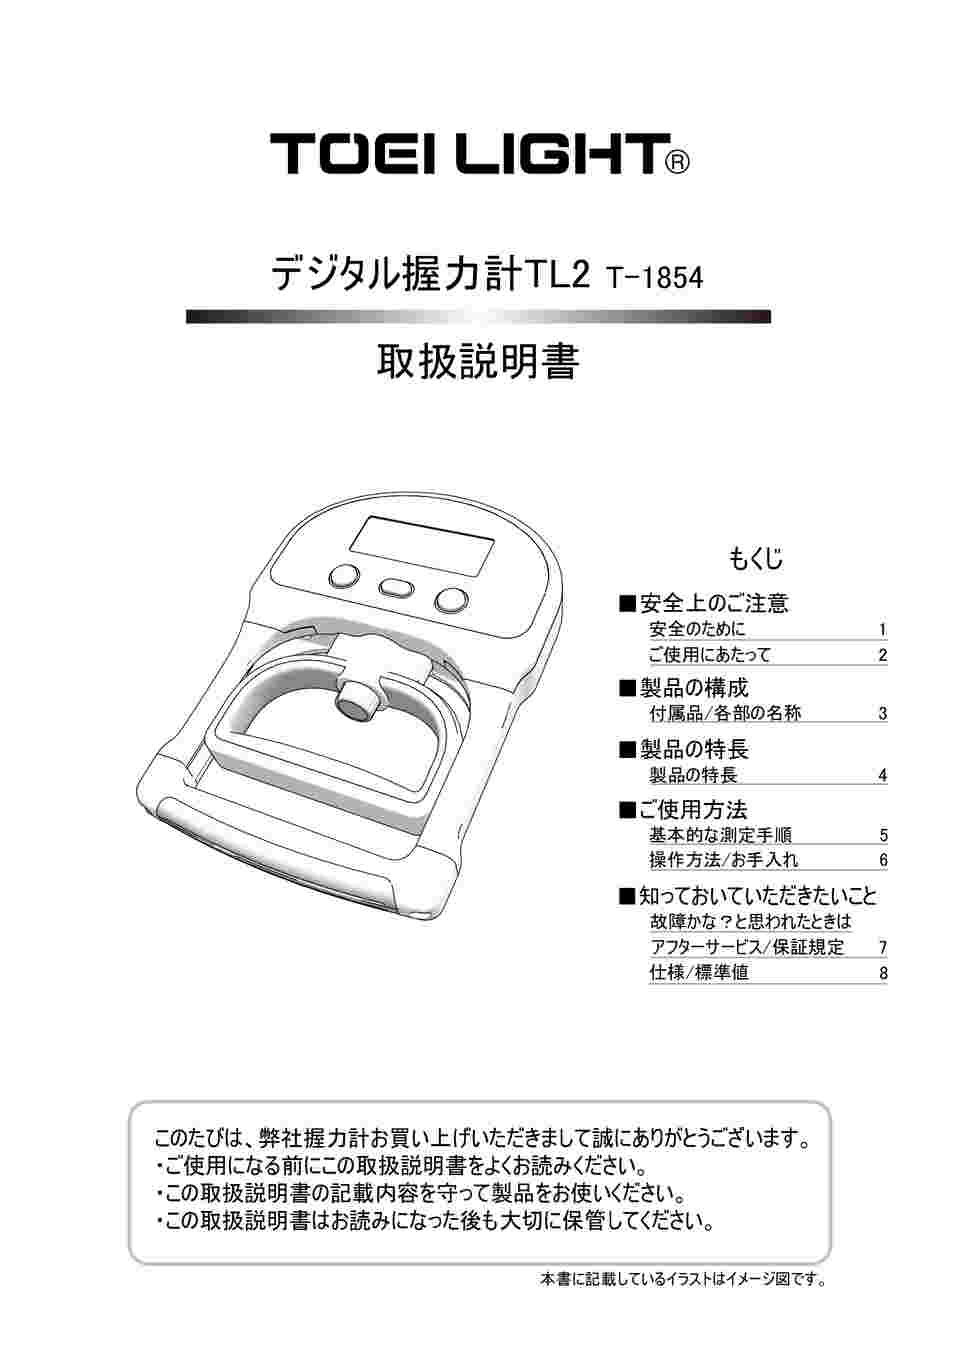 市場 トーエイライト LIGHT TOEI 日本製 デジタル握力計TL2